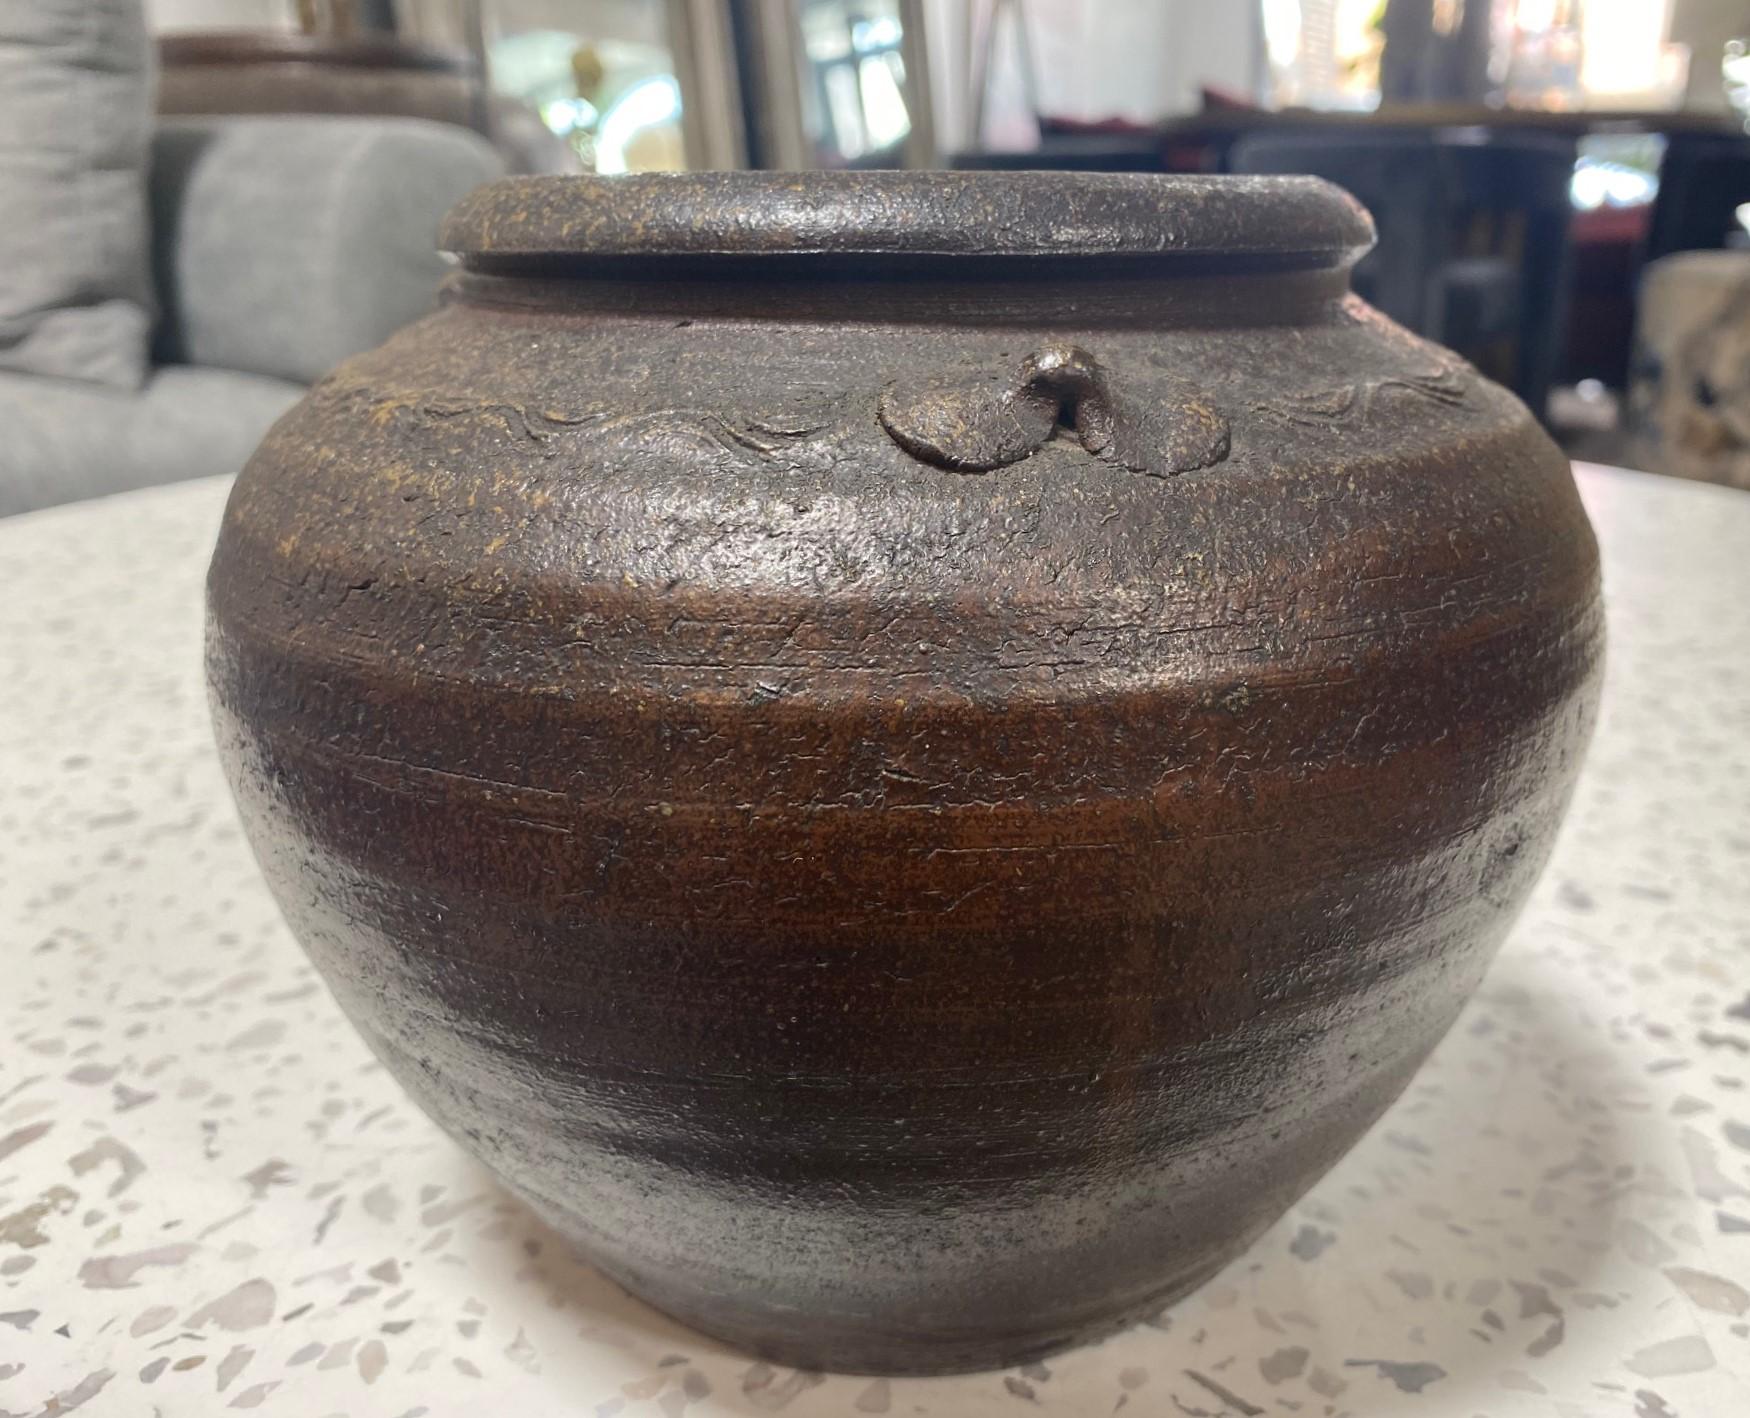 Kaneshige Toyo National Treasure Signed Japanese Bizen Pottery Tsubo Jar Vase For Sale 2